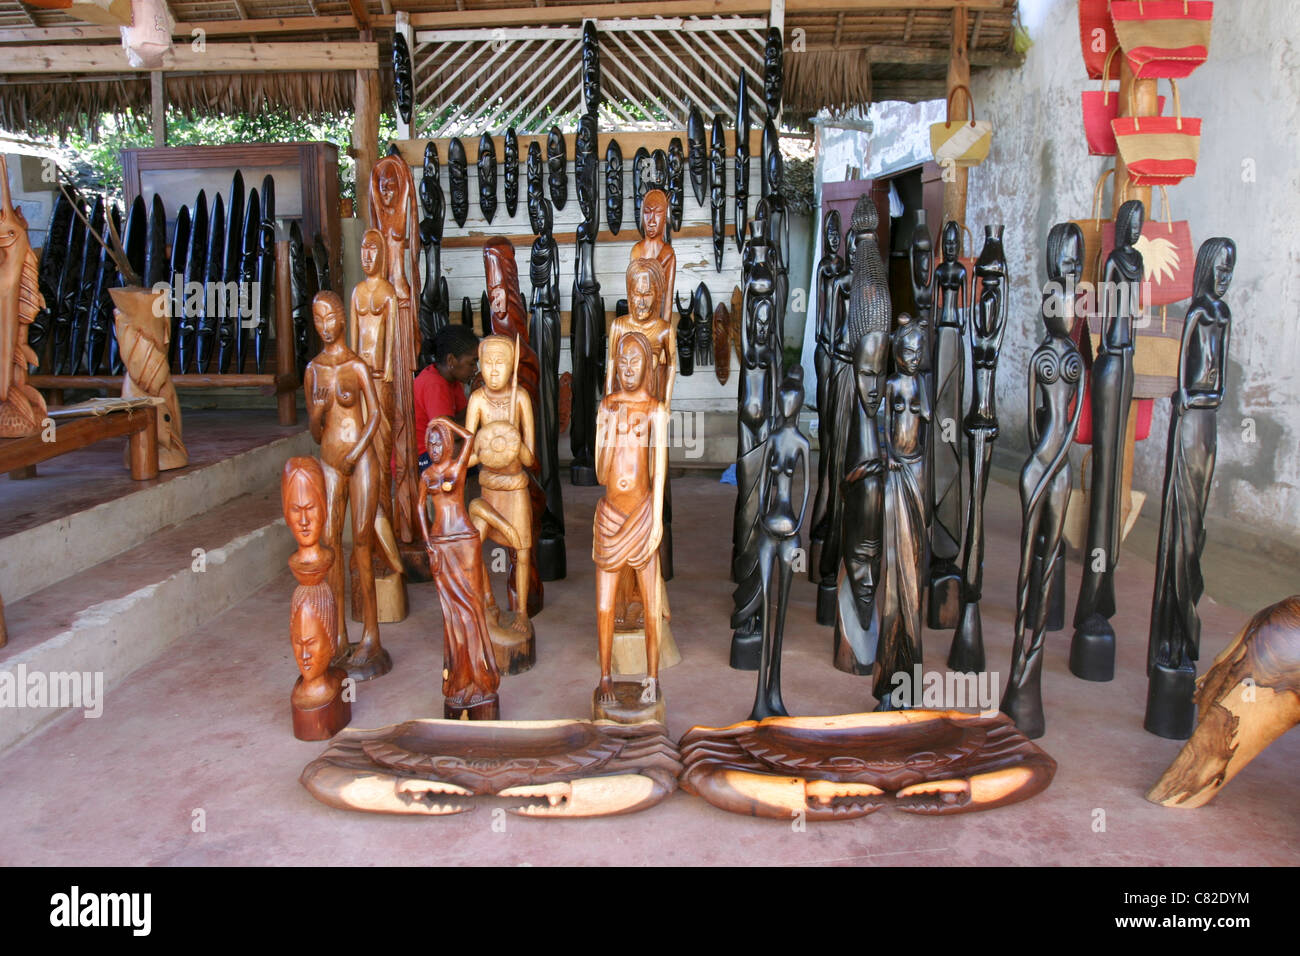 Madagaskar typischen handwerklichen Arbeiten auf Holz Statuen und Masken  für den Verkauf an Touristen in Nosy Komba-Madagaskar-Afrika  Stockfotografie - Alamy